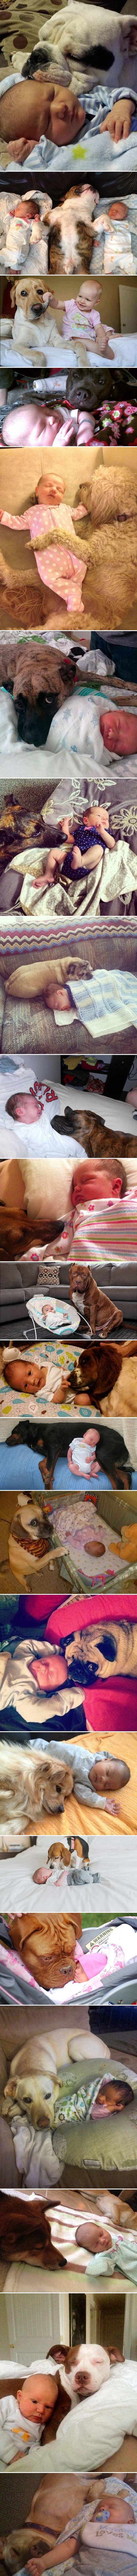 Roditelji su otkrili što se dogodi kada bebe ostanu u društvu pasa